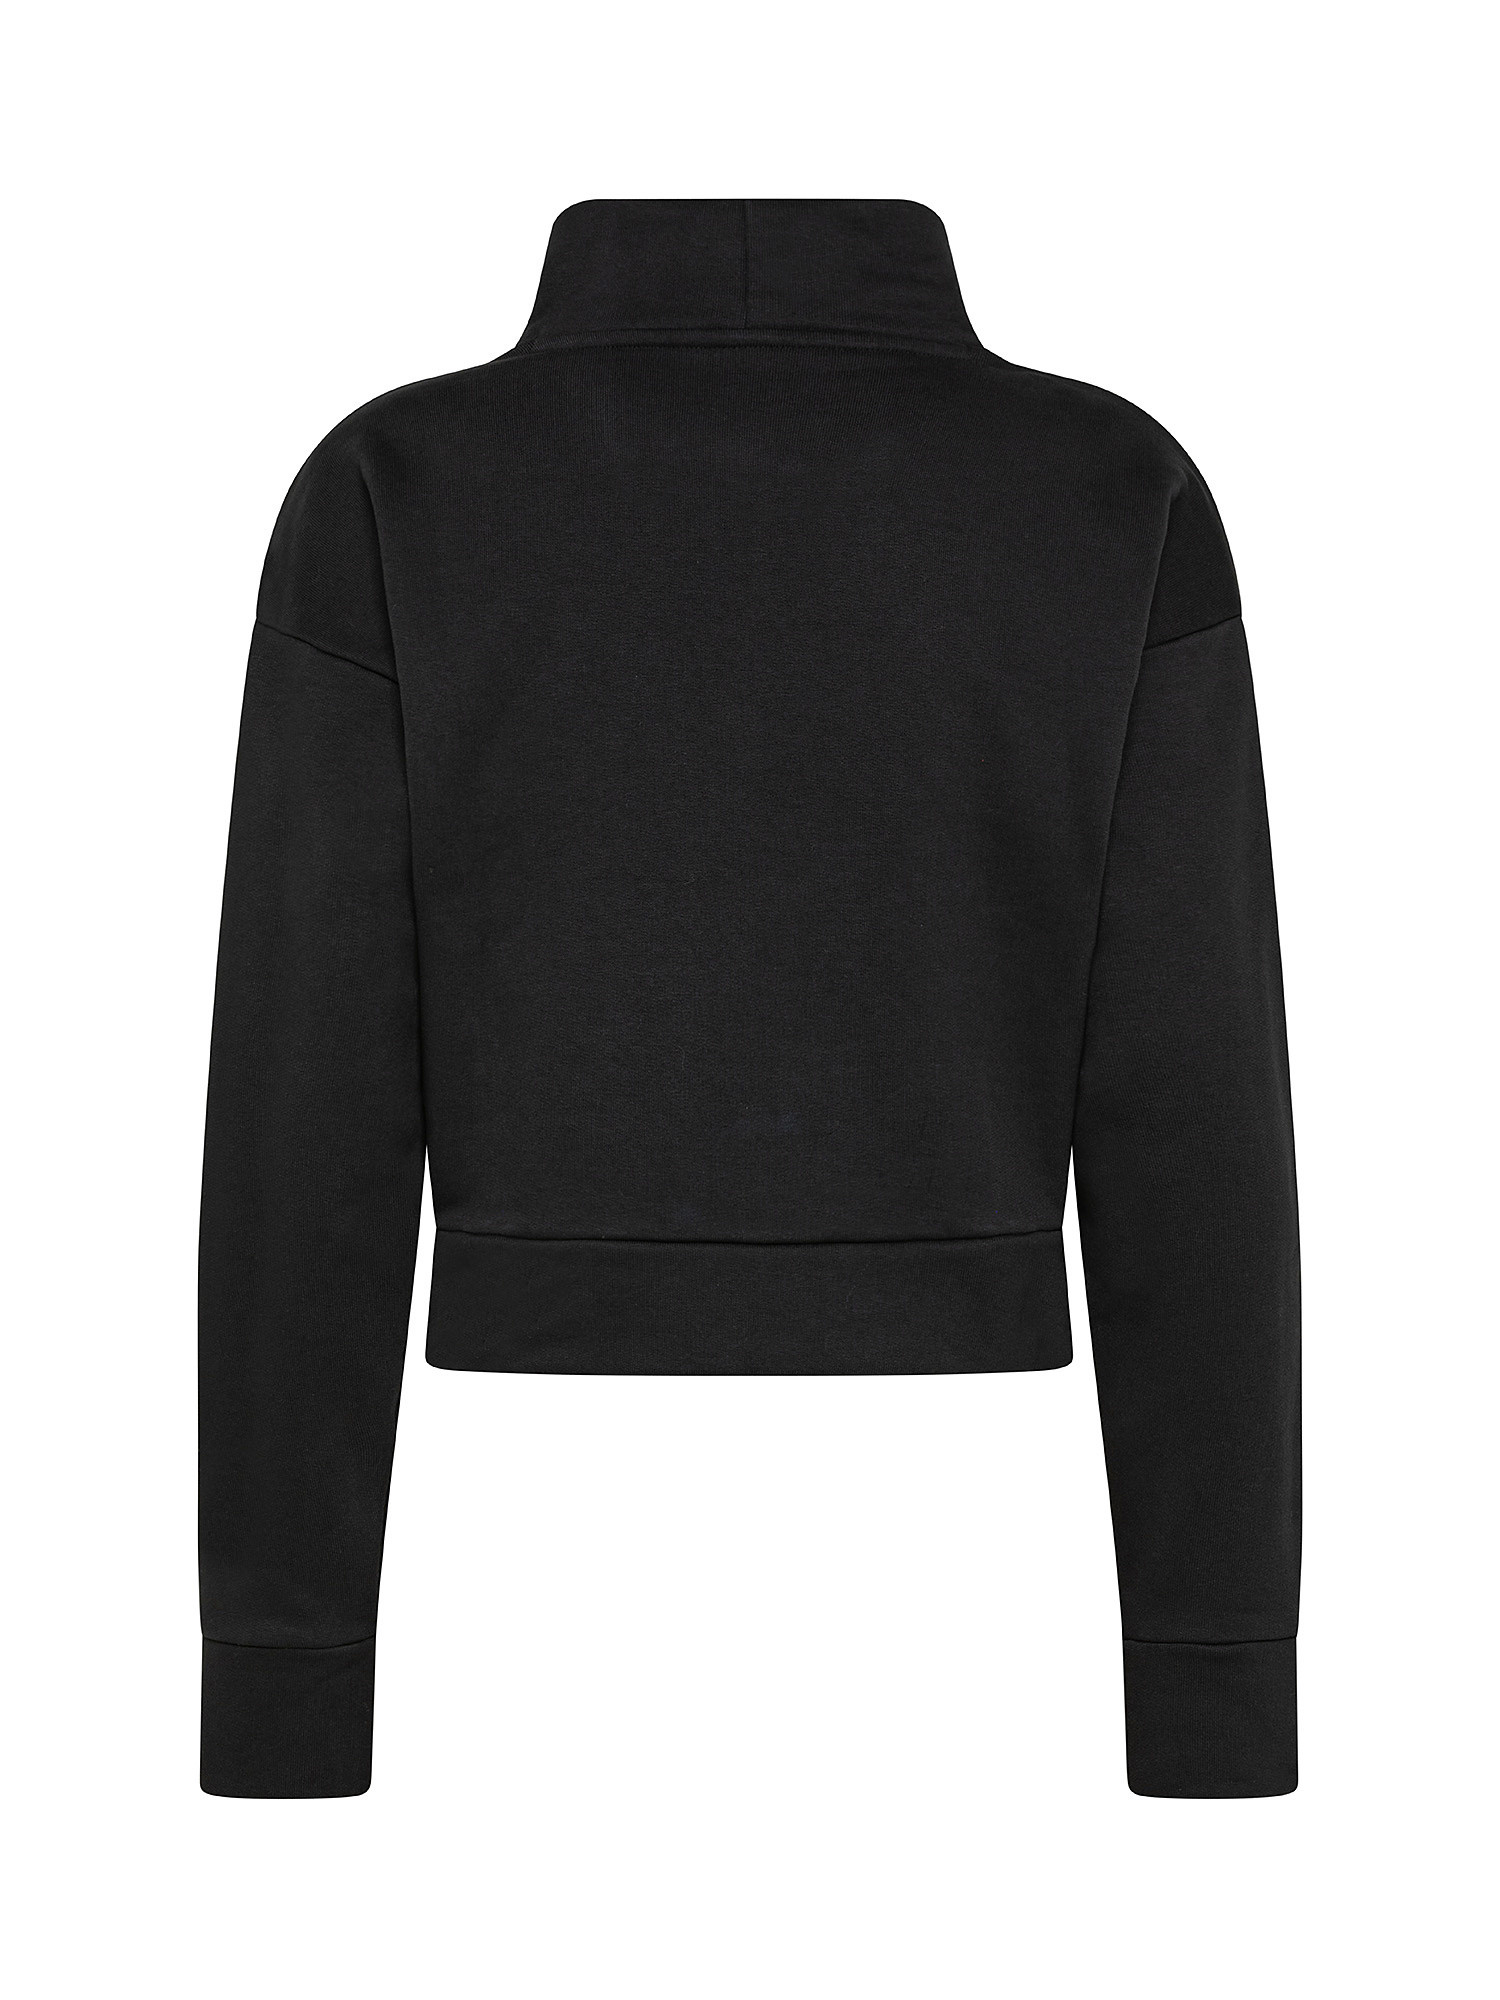 Adidas - Adicolor turtleneck sweatshirt, Black, large image number 1